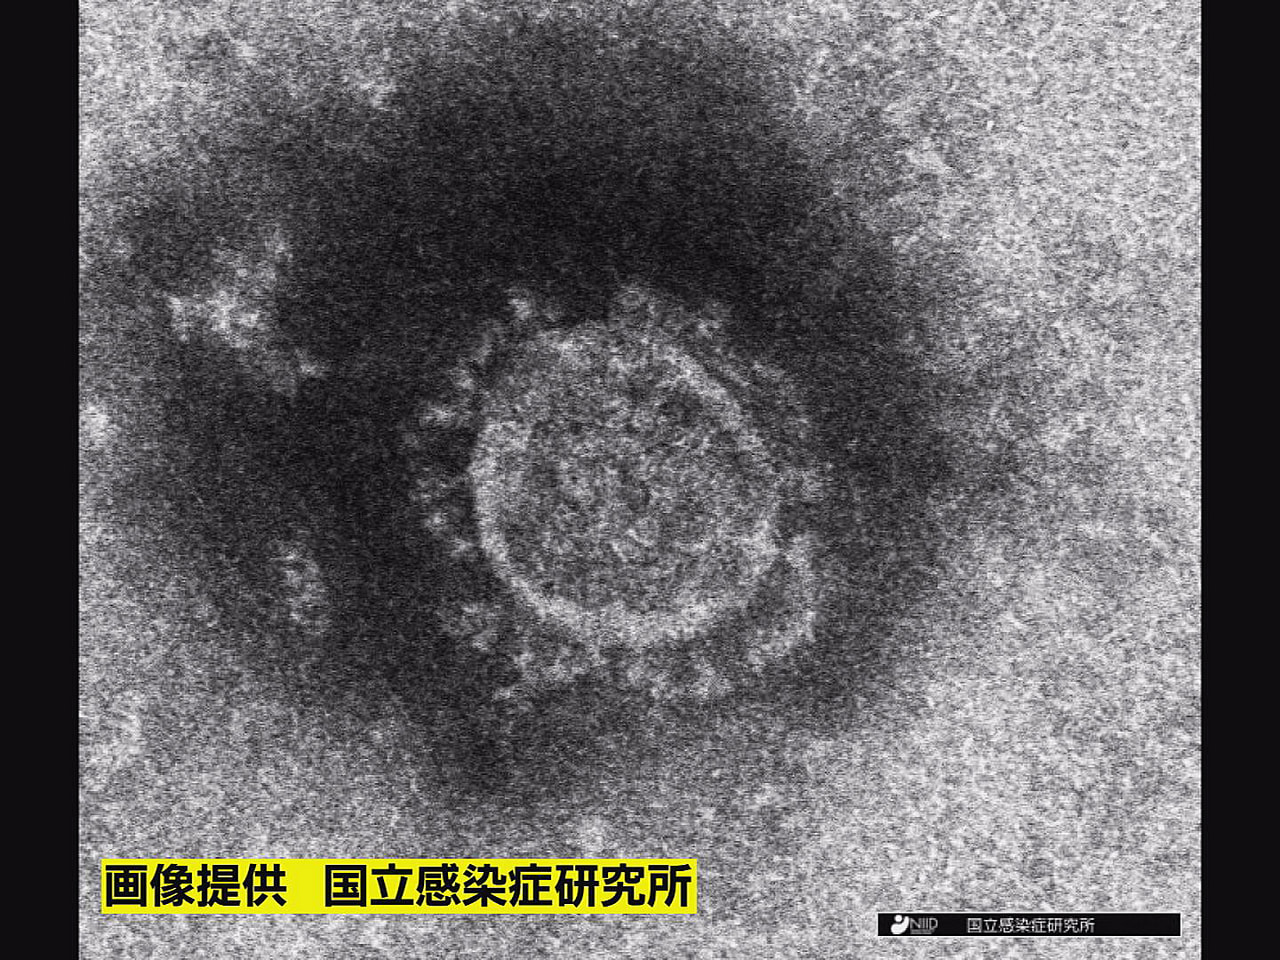 岐阜県は３０日、新型コロナウイルスの感染者が新たに２７４人確認されたと発表しまし...